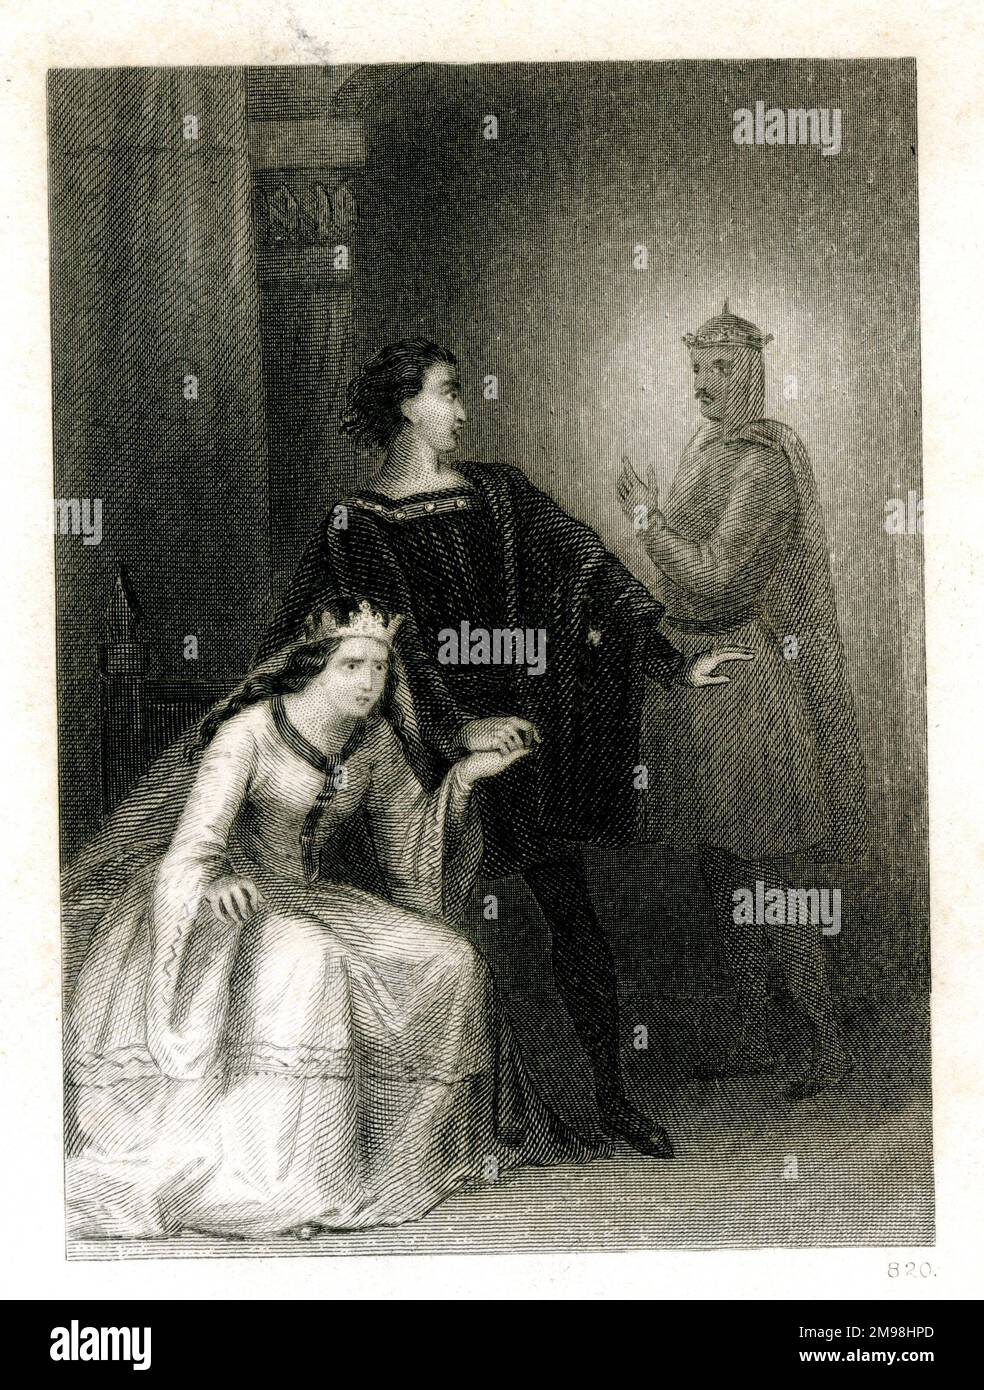 Escena de Hamlet de Shakespeare, que muestra a Hamlet con su madre, la reina Gertrude, y el fantasma de su padre en el fondo. Foto de stock